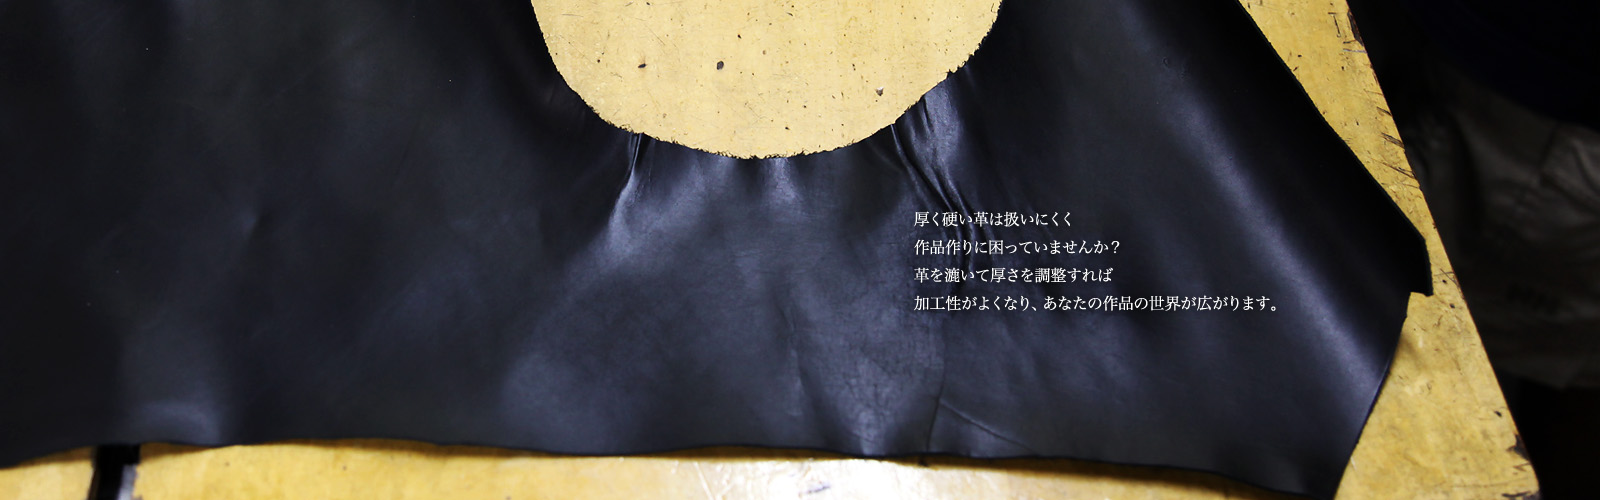 【新品/送料込み】東芝 TOSHIBA DBR-M3010 BDレコーダー